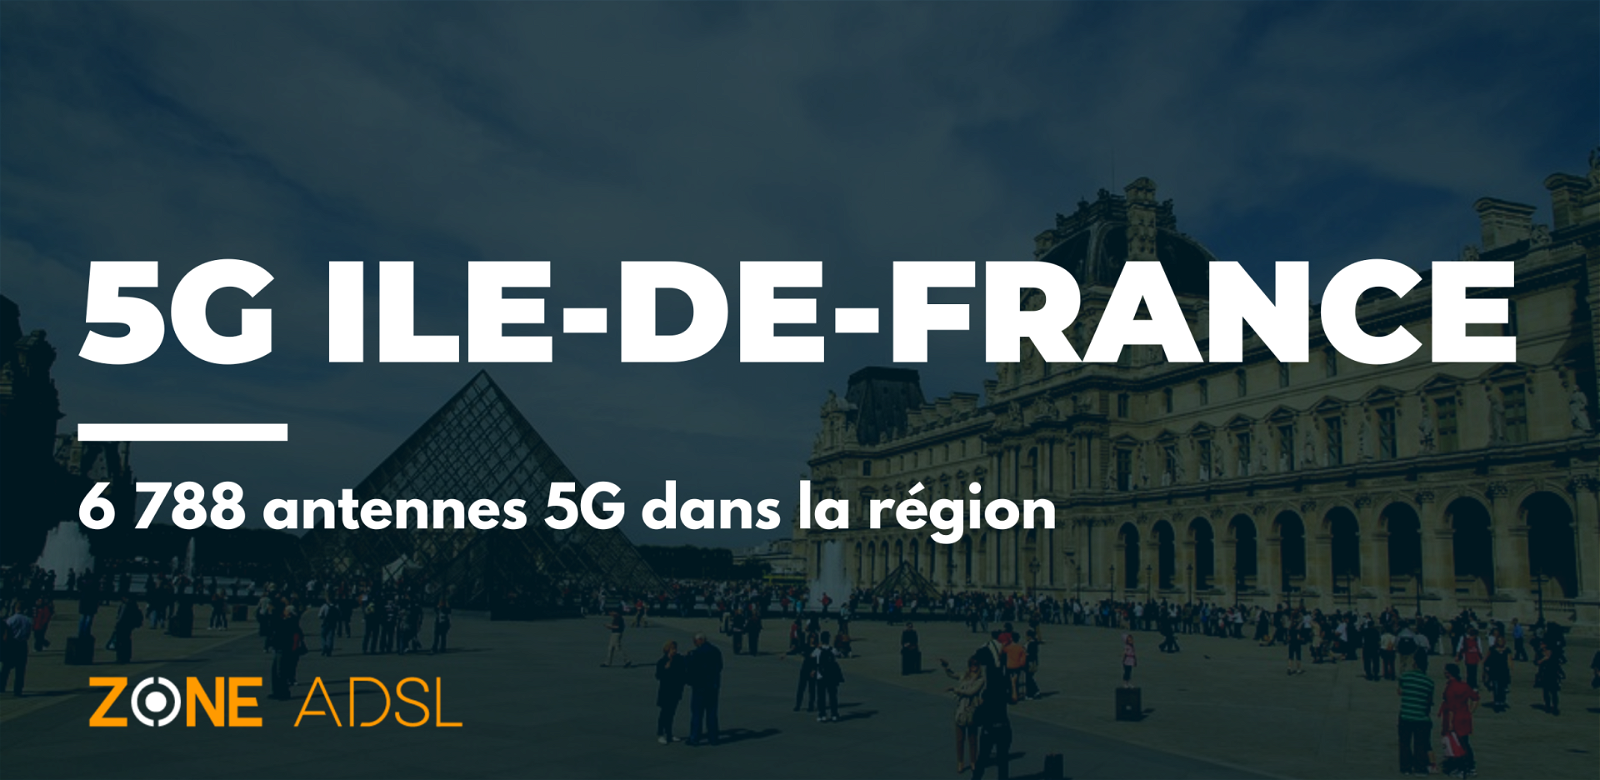 4G/5G : à Saint-Germain-en-Laye, inquiétudes autour de l'installation de…  six antennes - Le Parisien